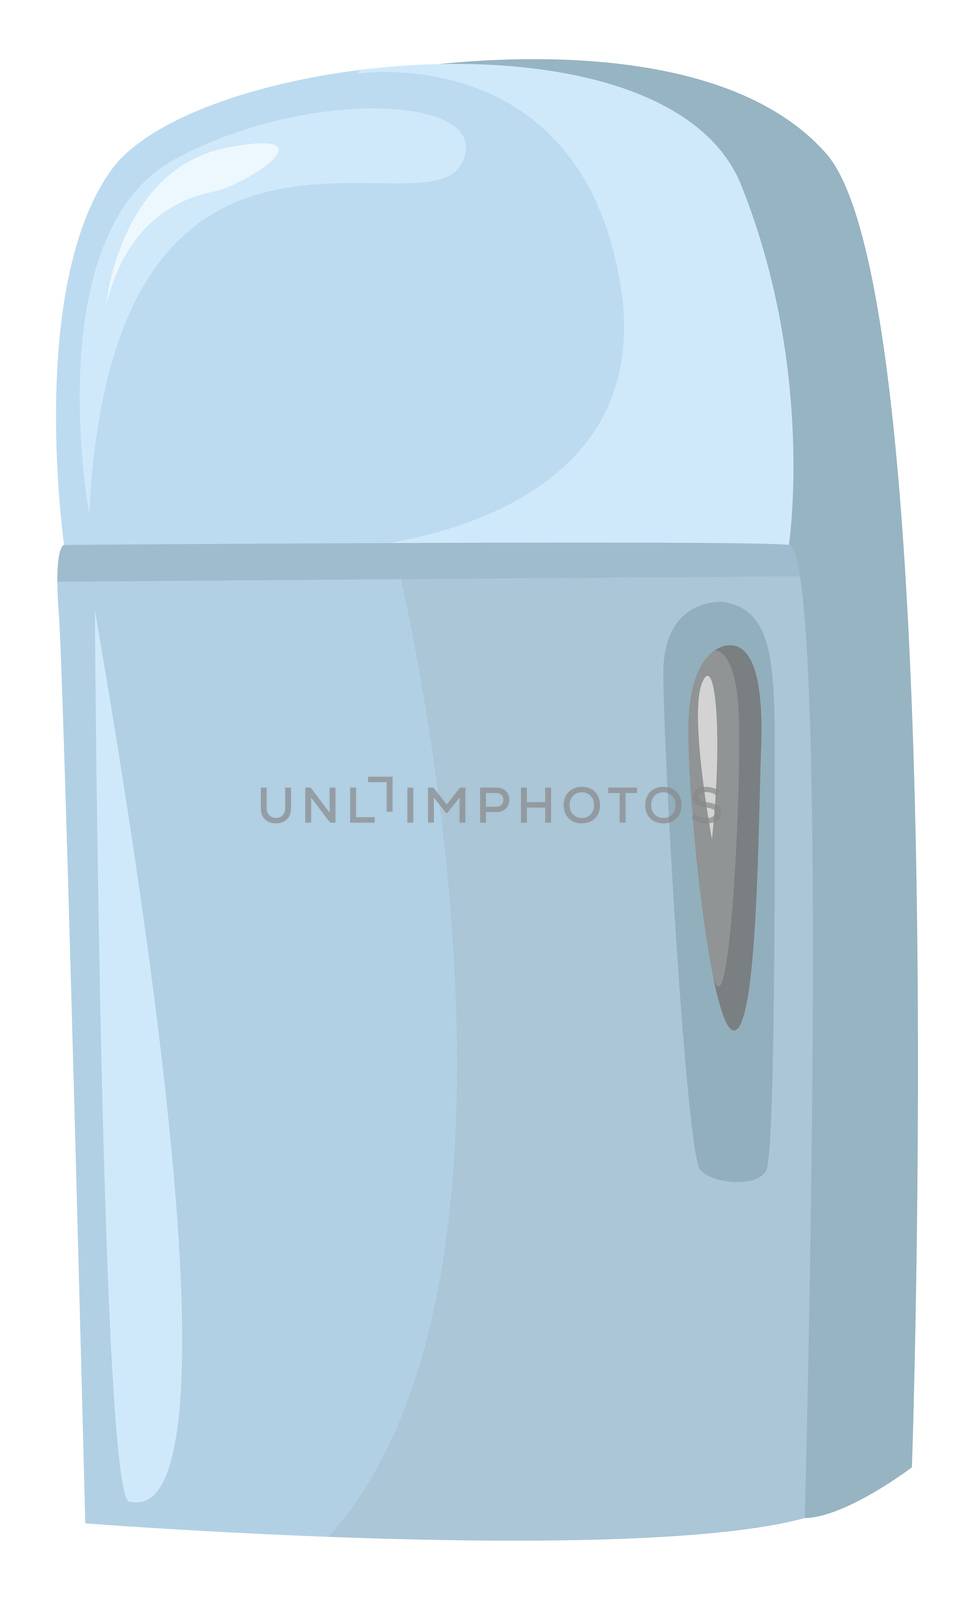 Blue fridge , illustration, vector on white background by Morphart